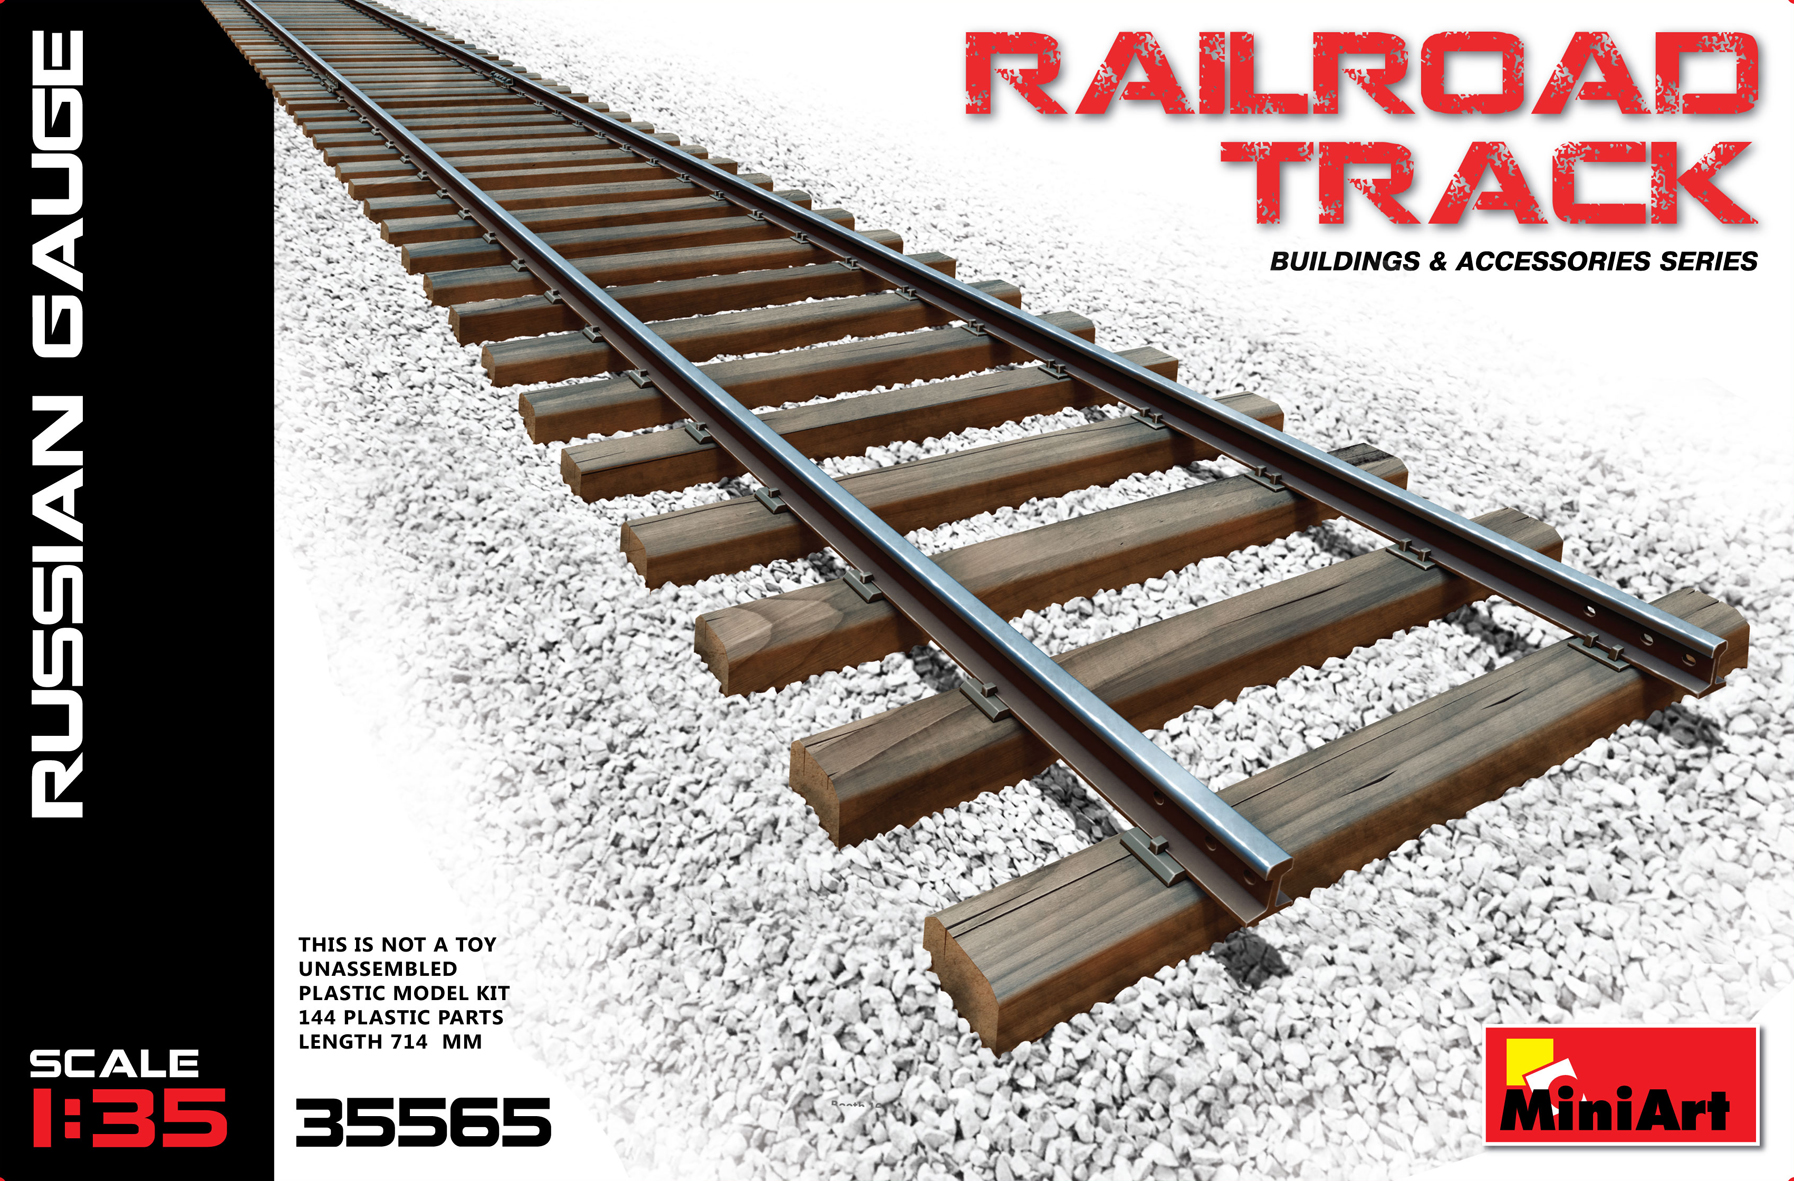 1:35 Miniart Railroad Track Russian Gauge Set Model Kit. 